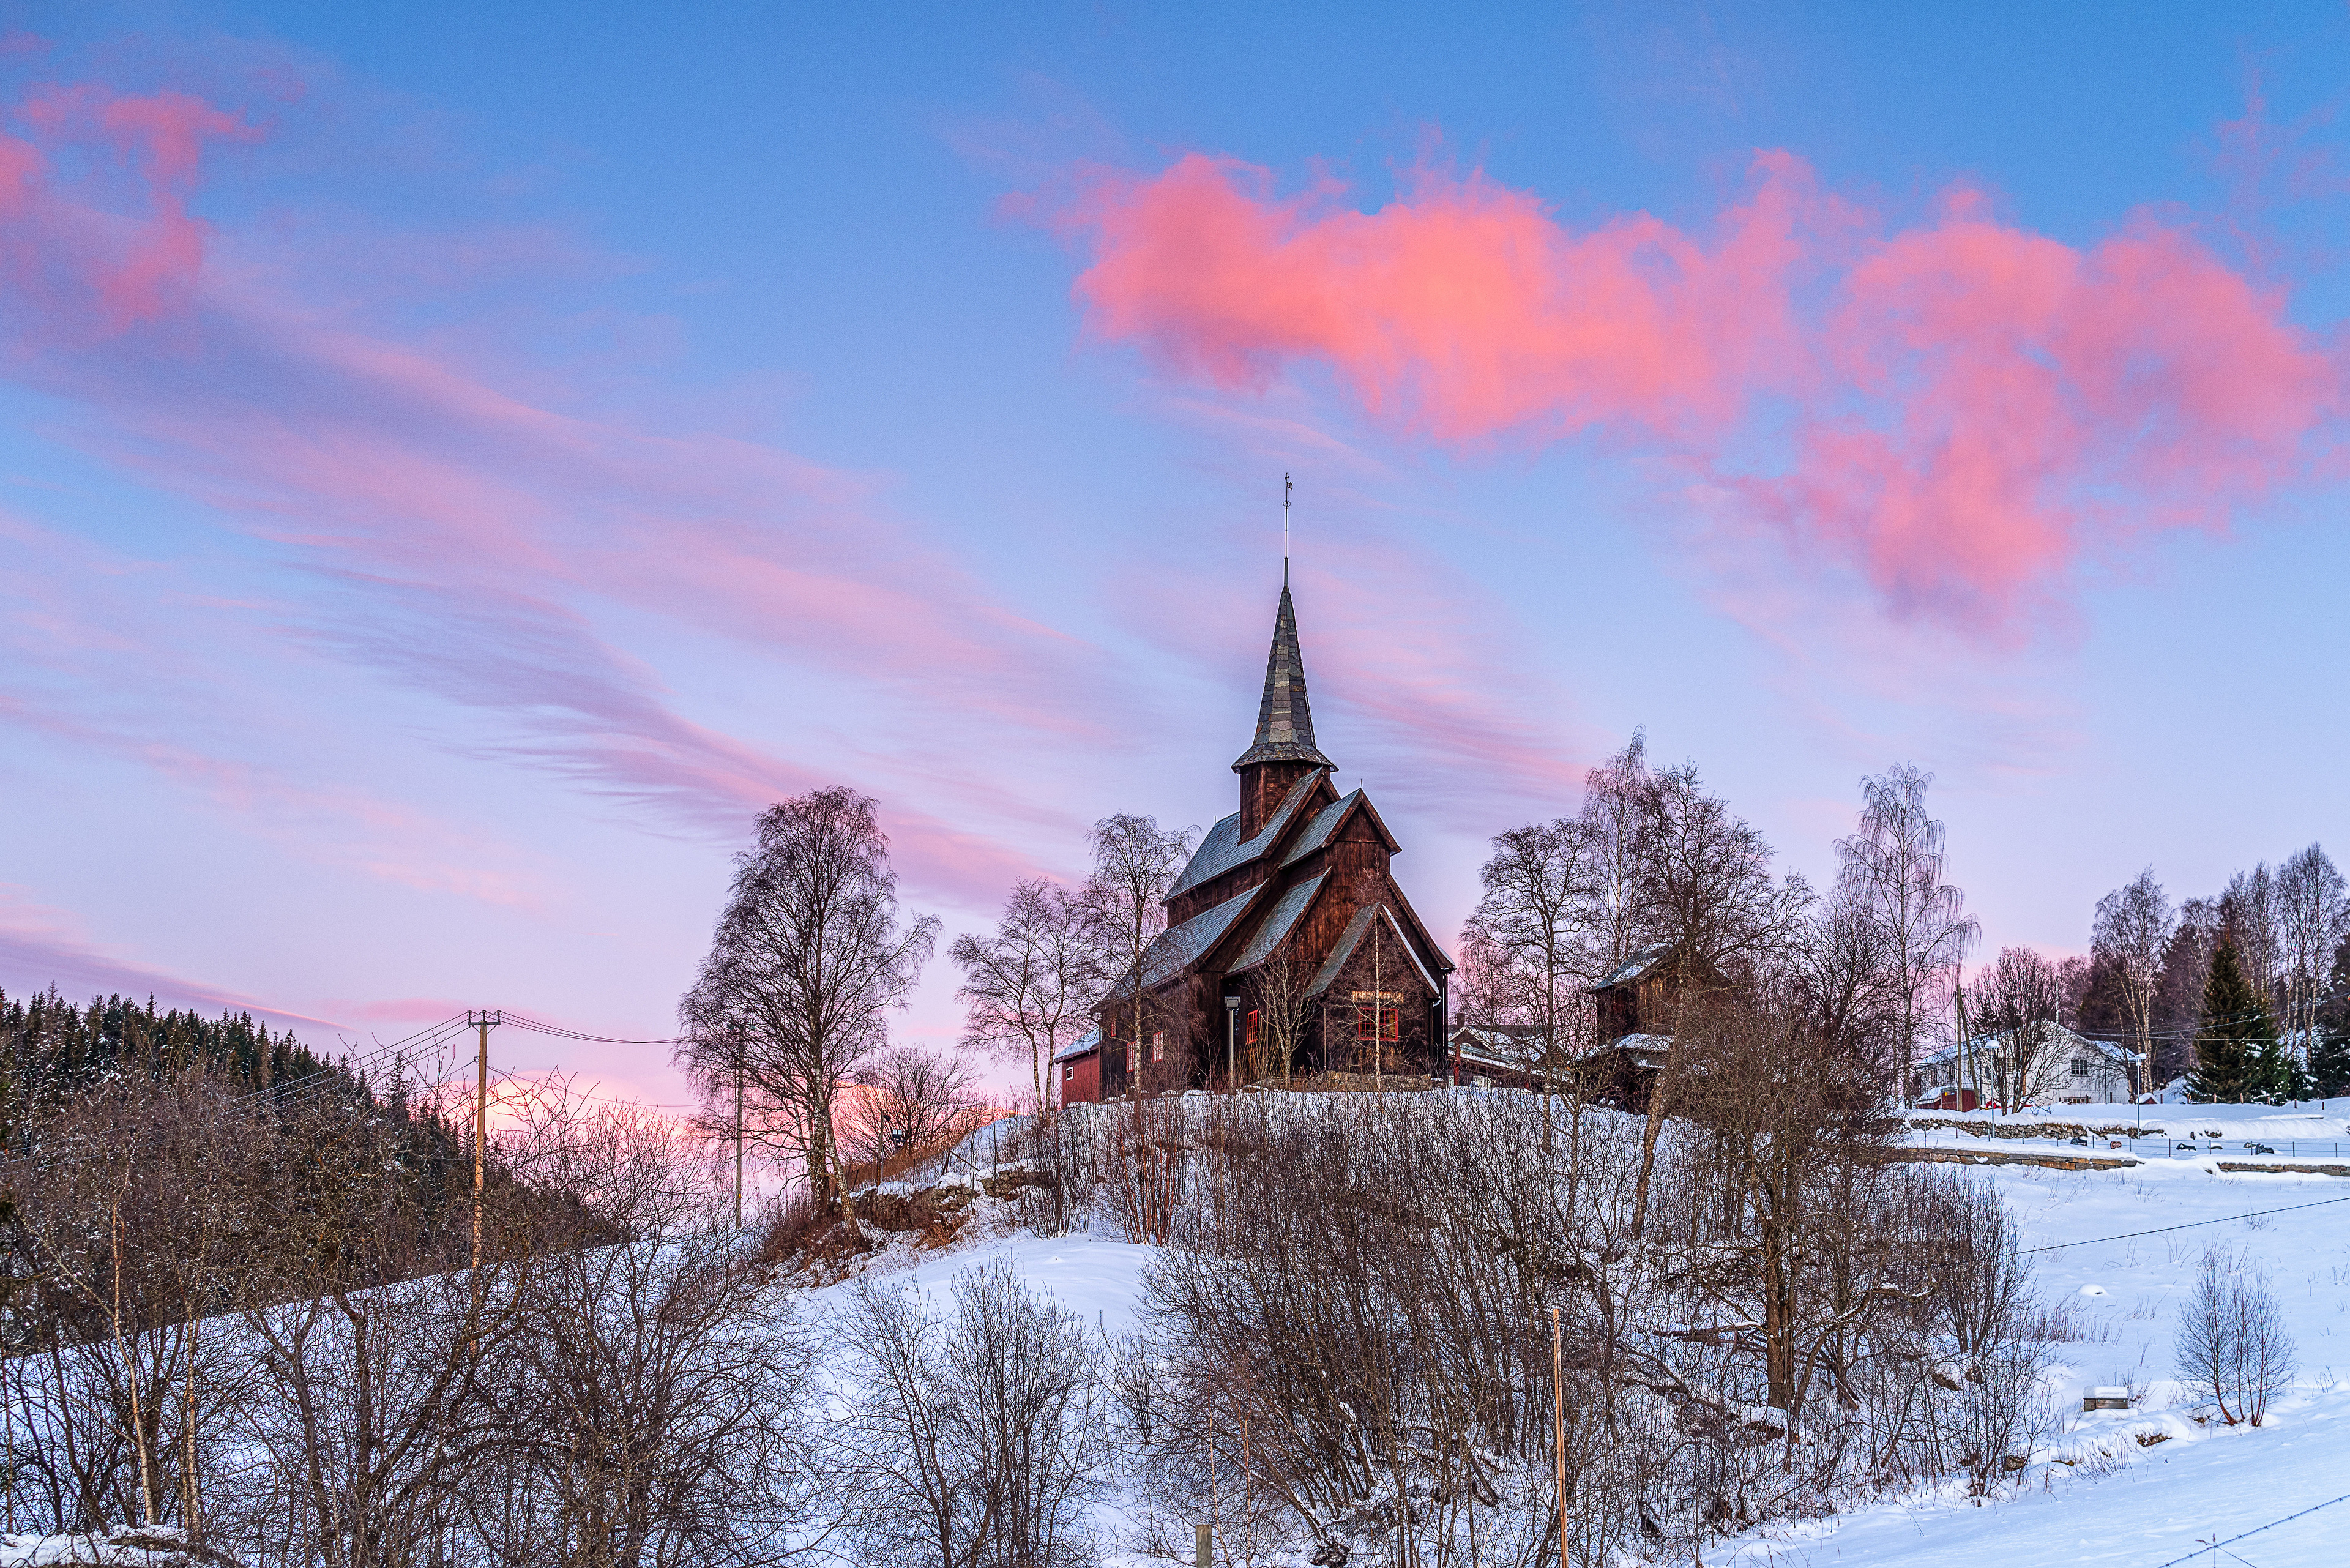 Картинка Церковь Норвегия Valdres Природа Снег дерево 3840x2563 снега снегу снеге дерева Деревья деревьев